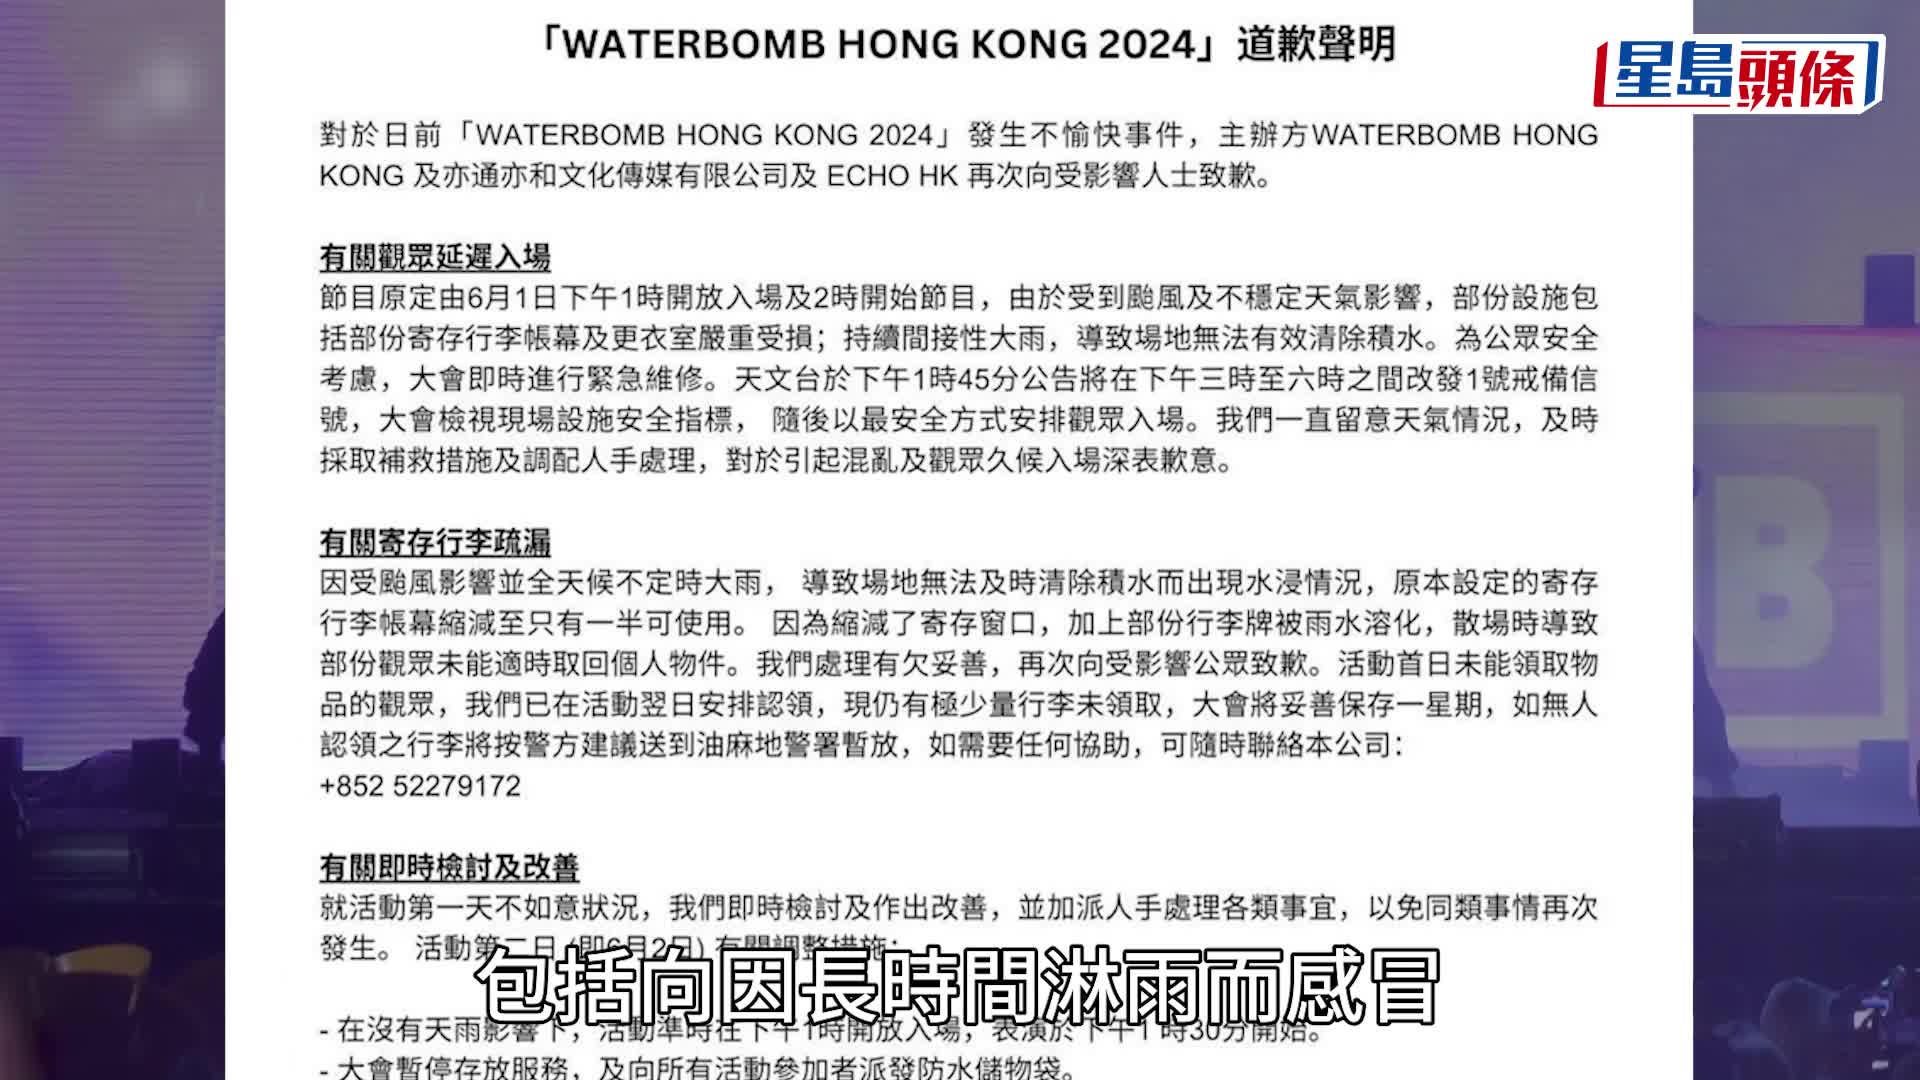 香港WATERBOMB︱散場安排混亂 總部發聲明表示抱歉 提供補償方案。